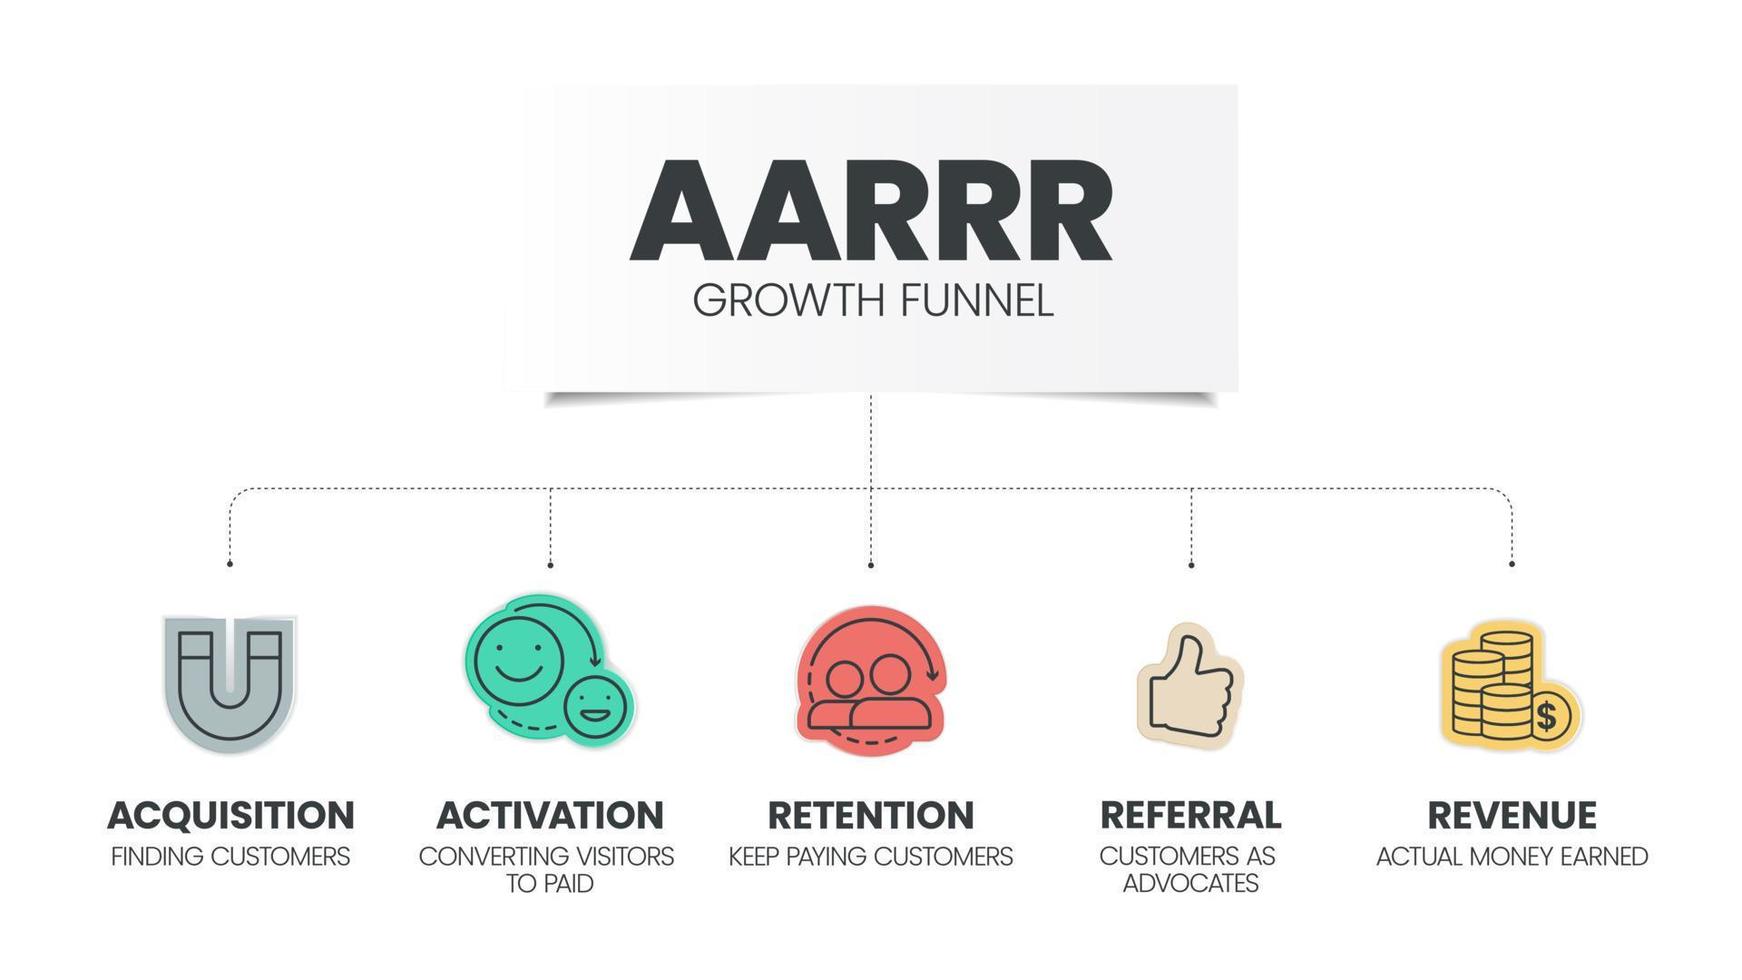 Le modèle d'infographie du modèle d'entonnoir de croissance aarrr avec des icônes comporte 5 étapes telles que l'acquisition, l'activation, la rétention, la référence et les revenus. pirate metrix ou cadre pirate pour mesurer la croissance et le succès vecteur